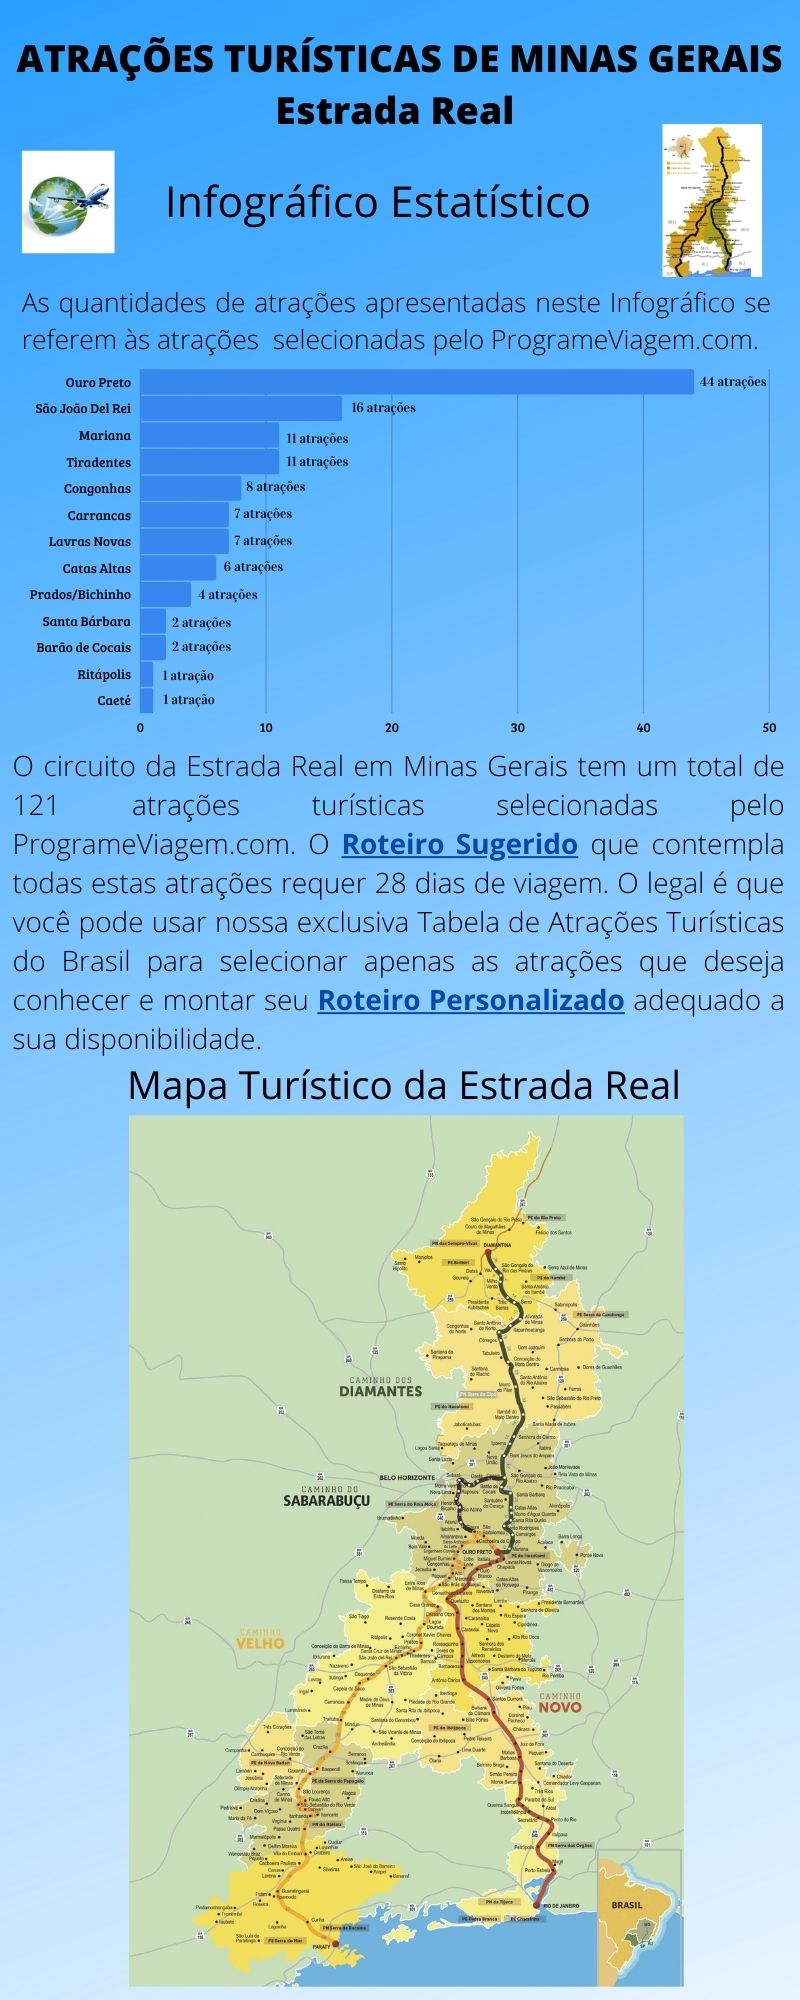 Infográfico Atrações Turísticas de Minas Gerais (Estrada Real)